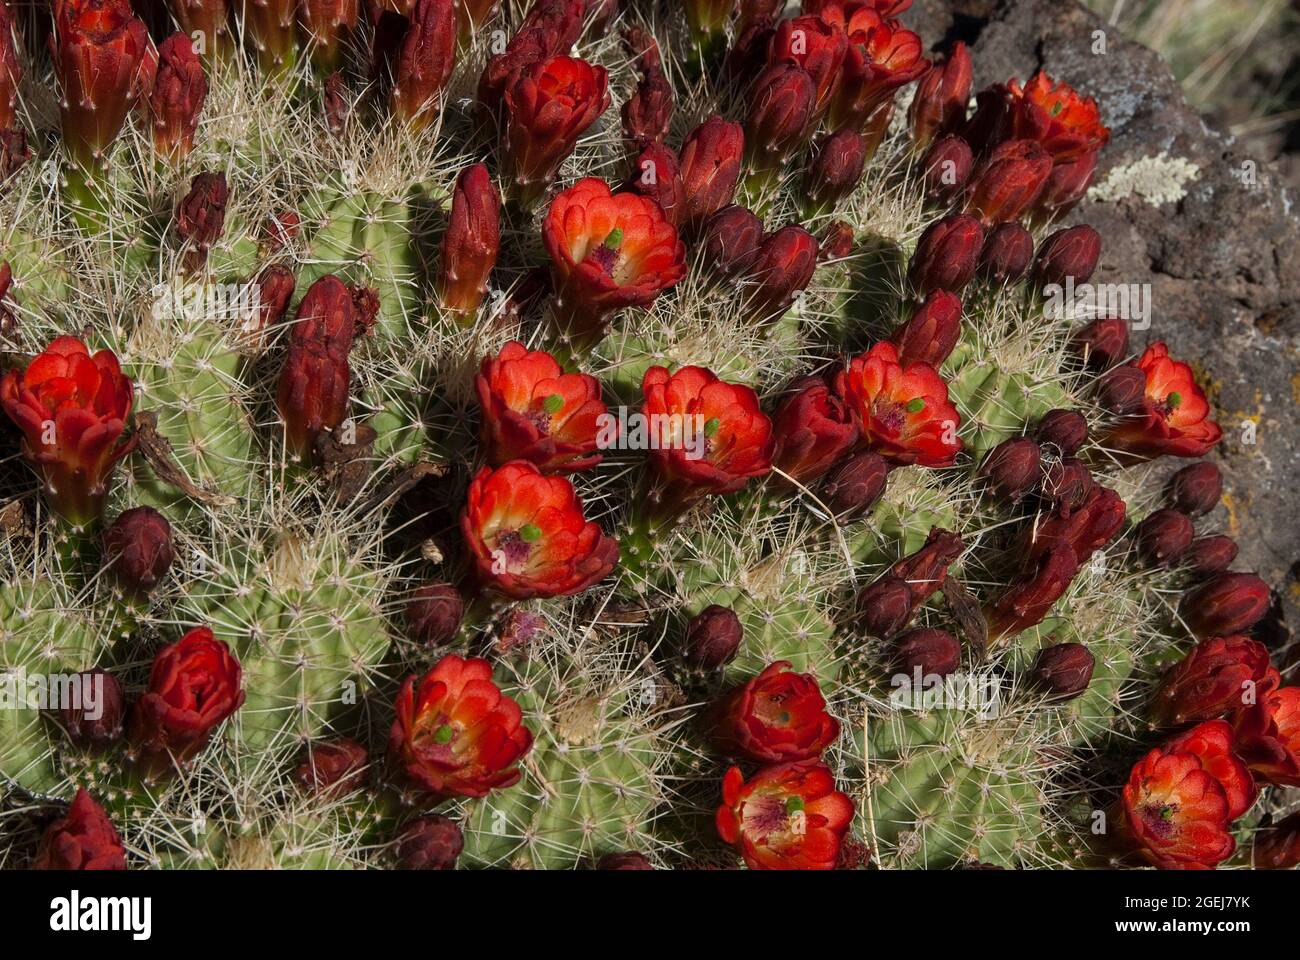 Claret Cup Cactus, Echinocereus triglochidiatus Stock Photo